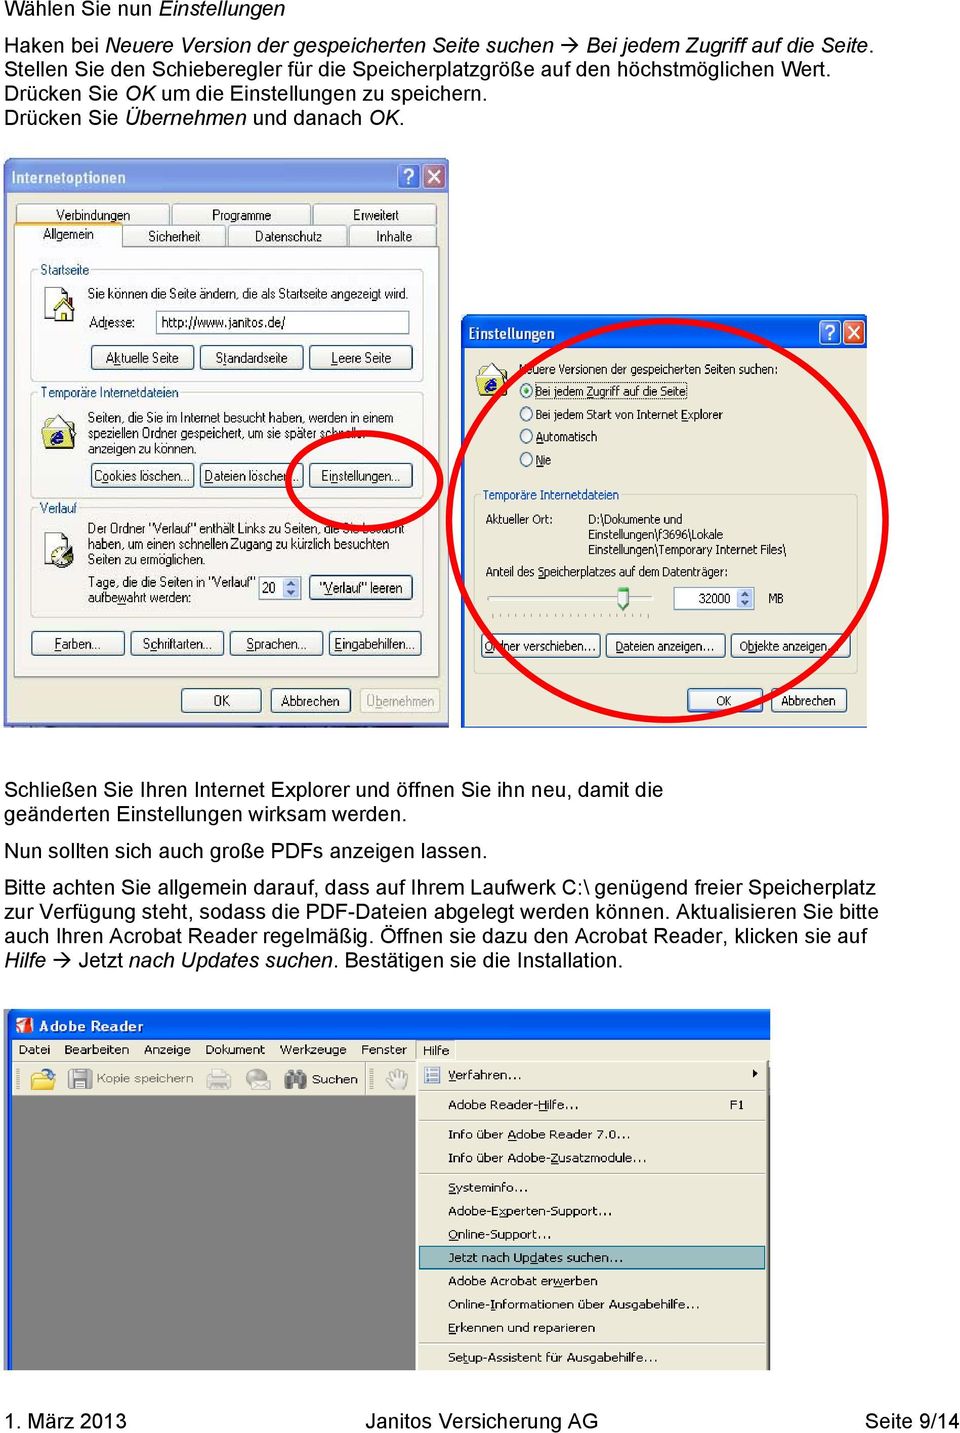 Schließen Sie Ihren Internet Explorer und öffnen Sie ihn neu, damit die geänderten Einstellungen wirksam werden. Nun sollten sich auch große PDFs anzeigen lassen.